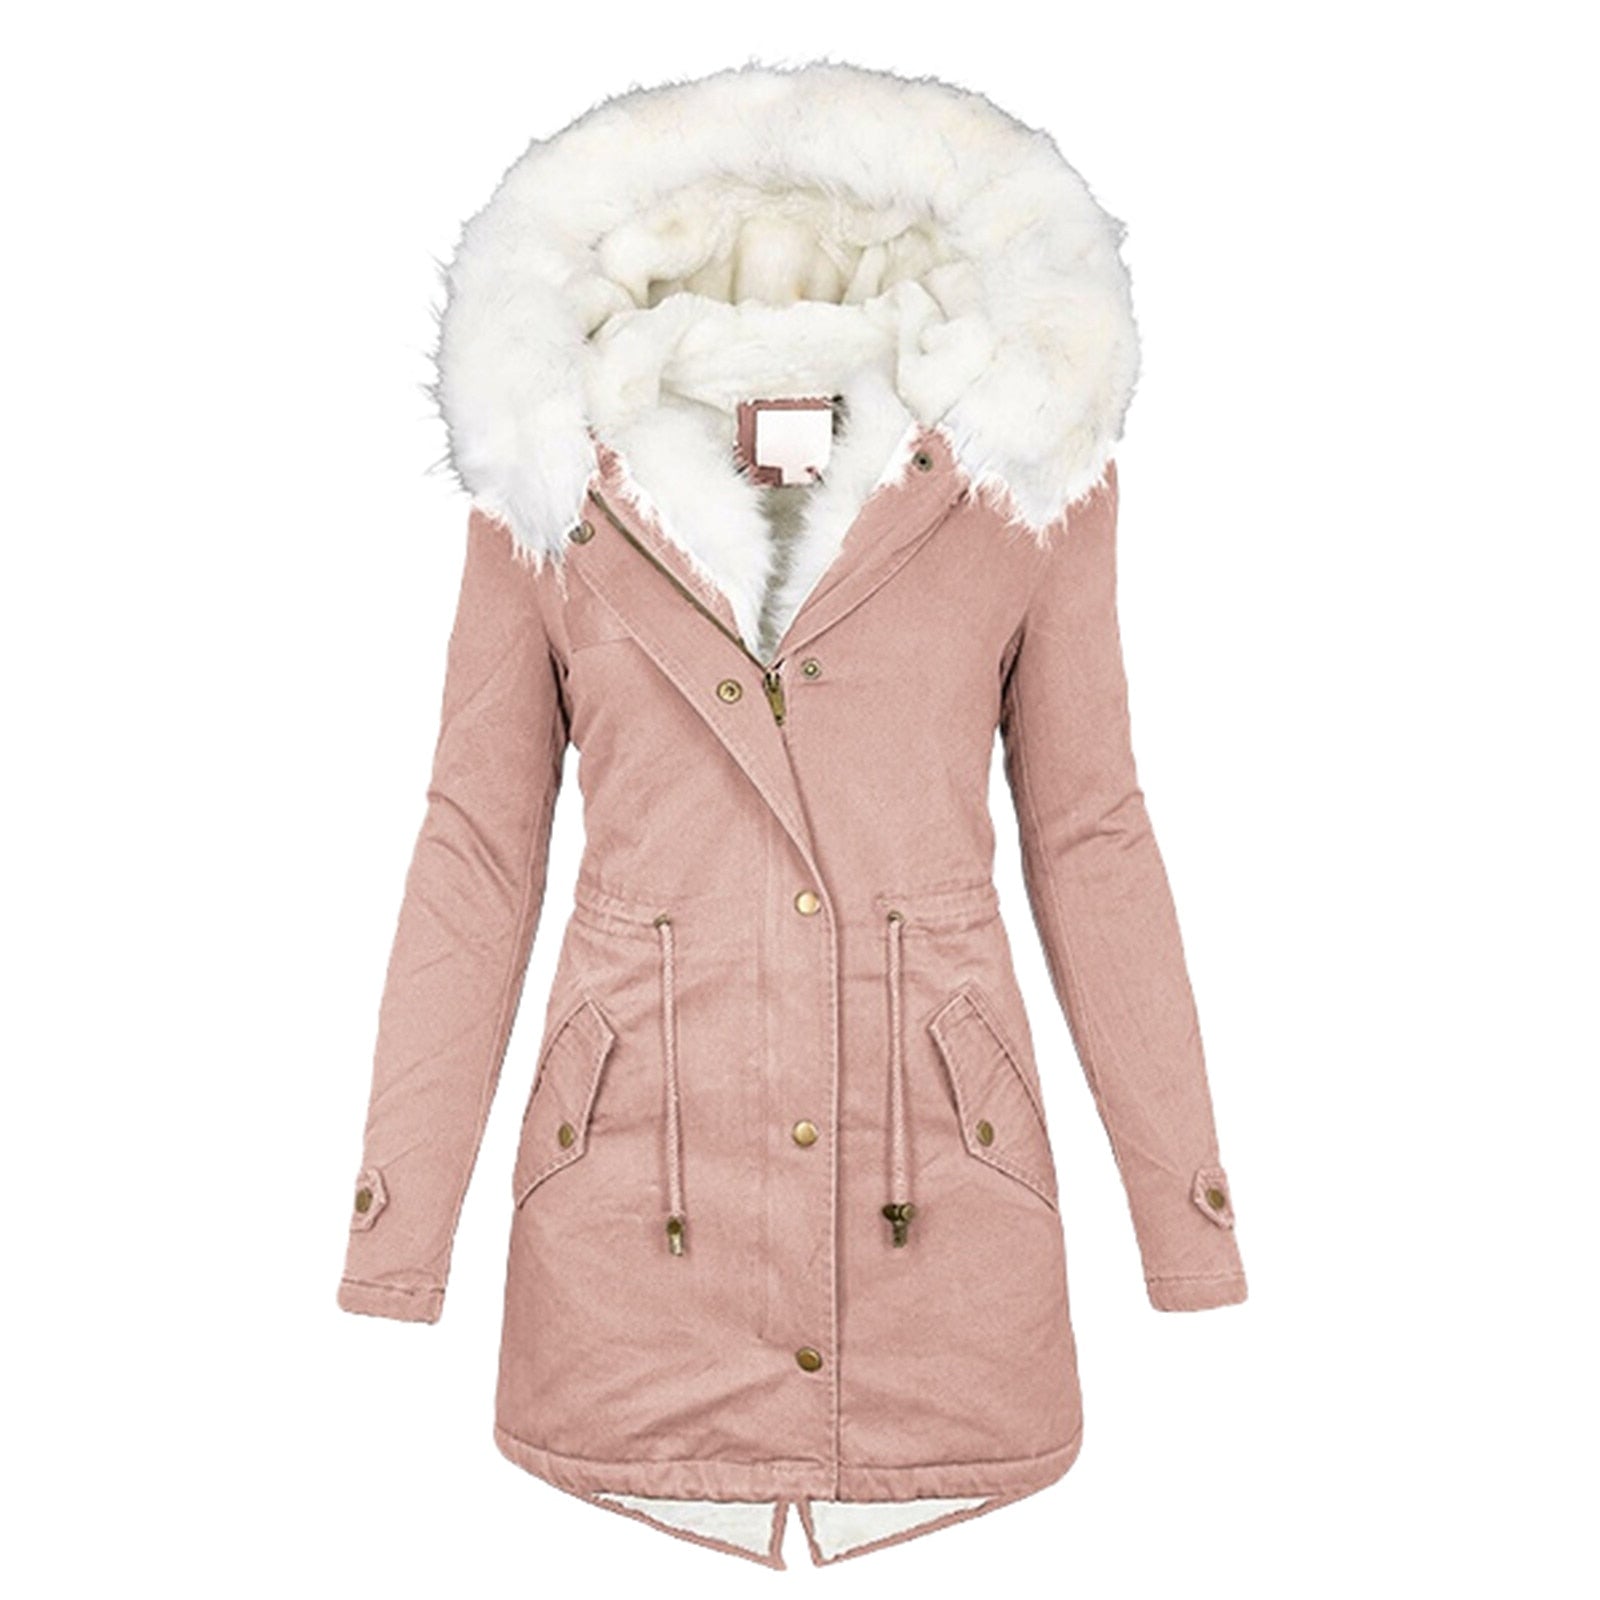 Neue Winter Damen Jacke mittellang verdicken Plus Size 5XL Outwear Kapuze Wattemantel schlanke Parka Baumwolle gepolsterte Jacke Mantel tif-shop24.de